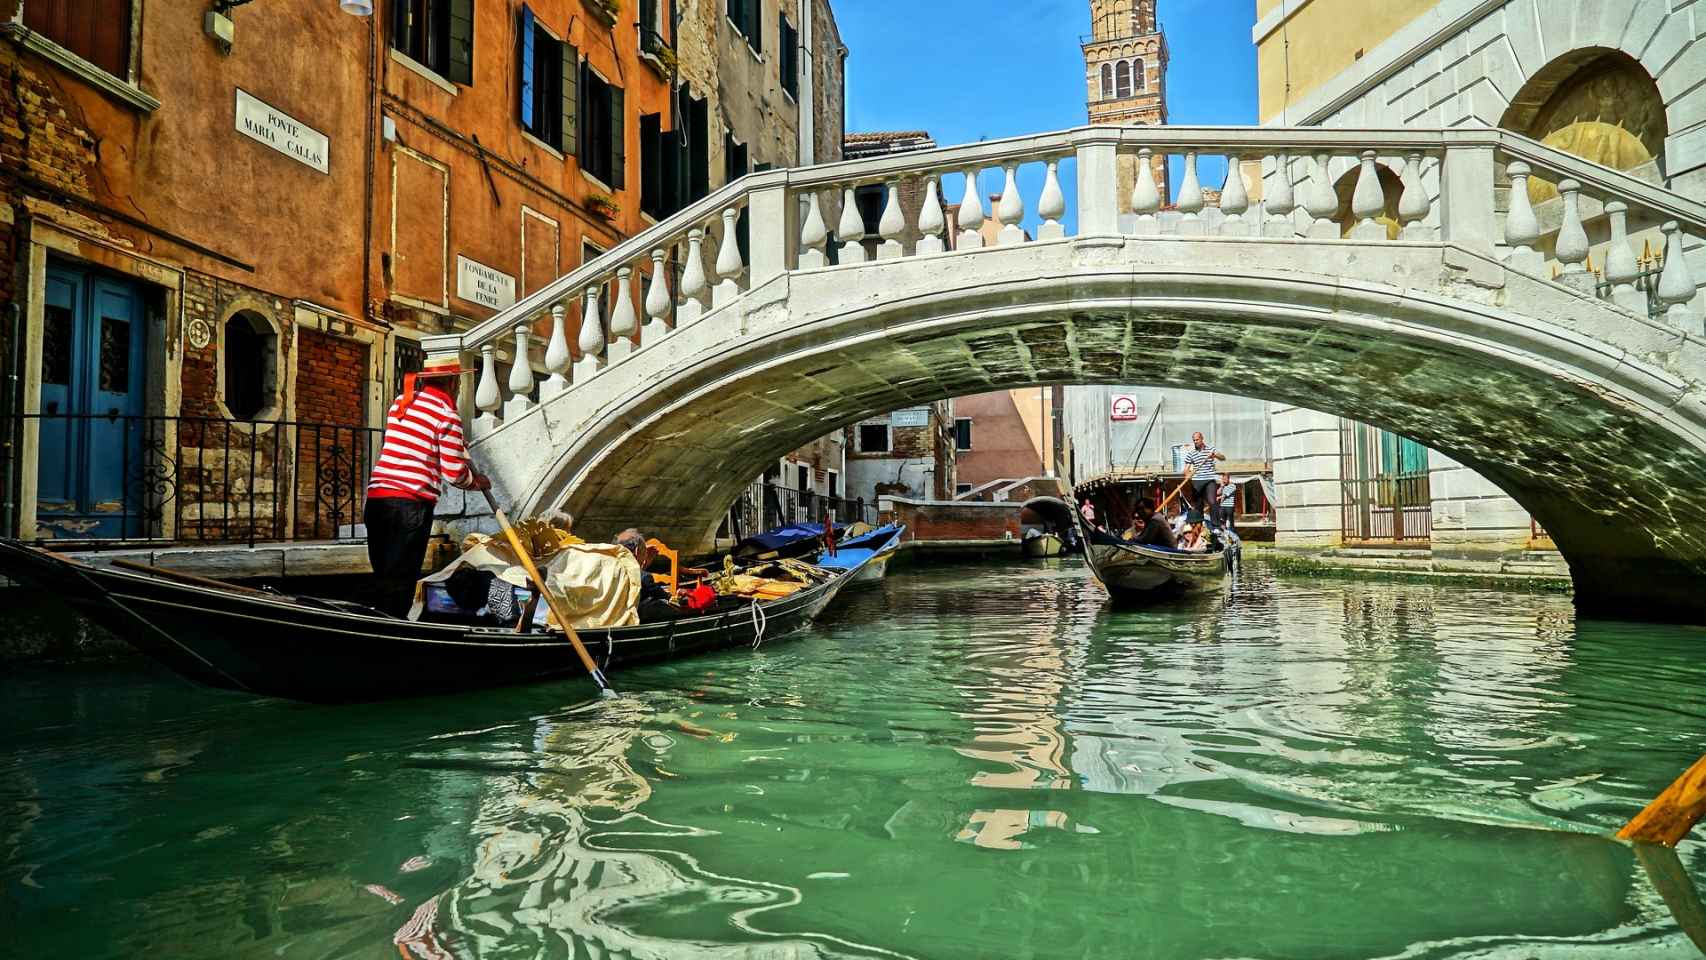 Venecia no puede ser tan bella